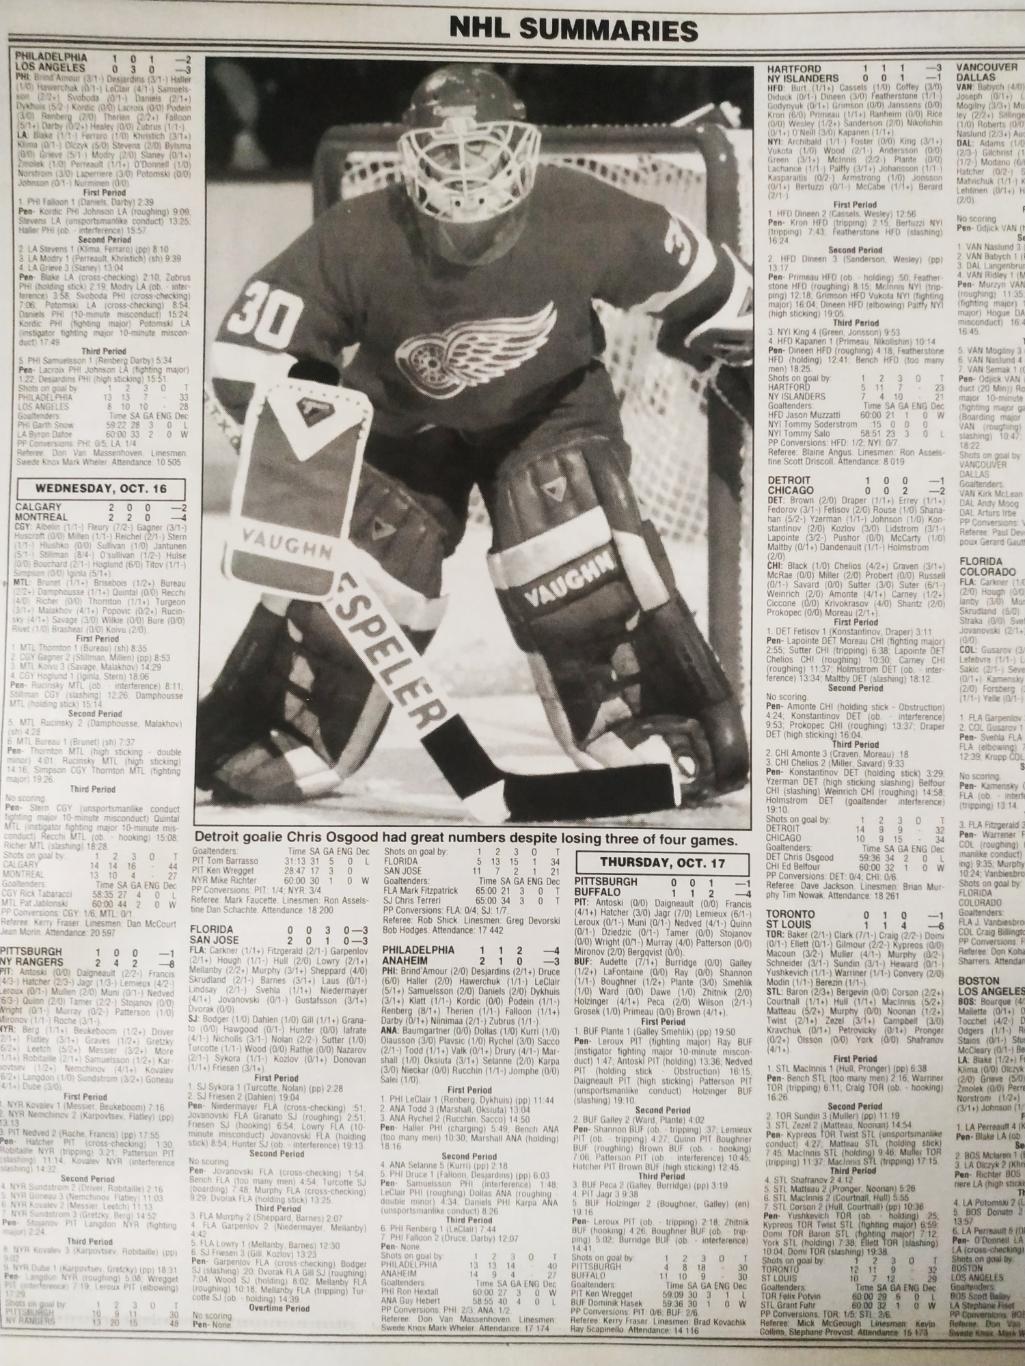 ХОККЕЙ ЖУРНАЛ ЕЖЕНЕДЕЛЬНИК НХЛ НОВОСТИ ХОККЕЯ NHL NOV.1 1996 THE HOCKEY NEWS 6